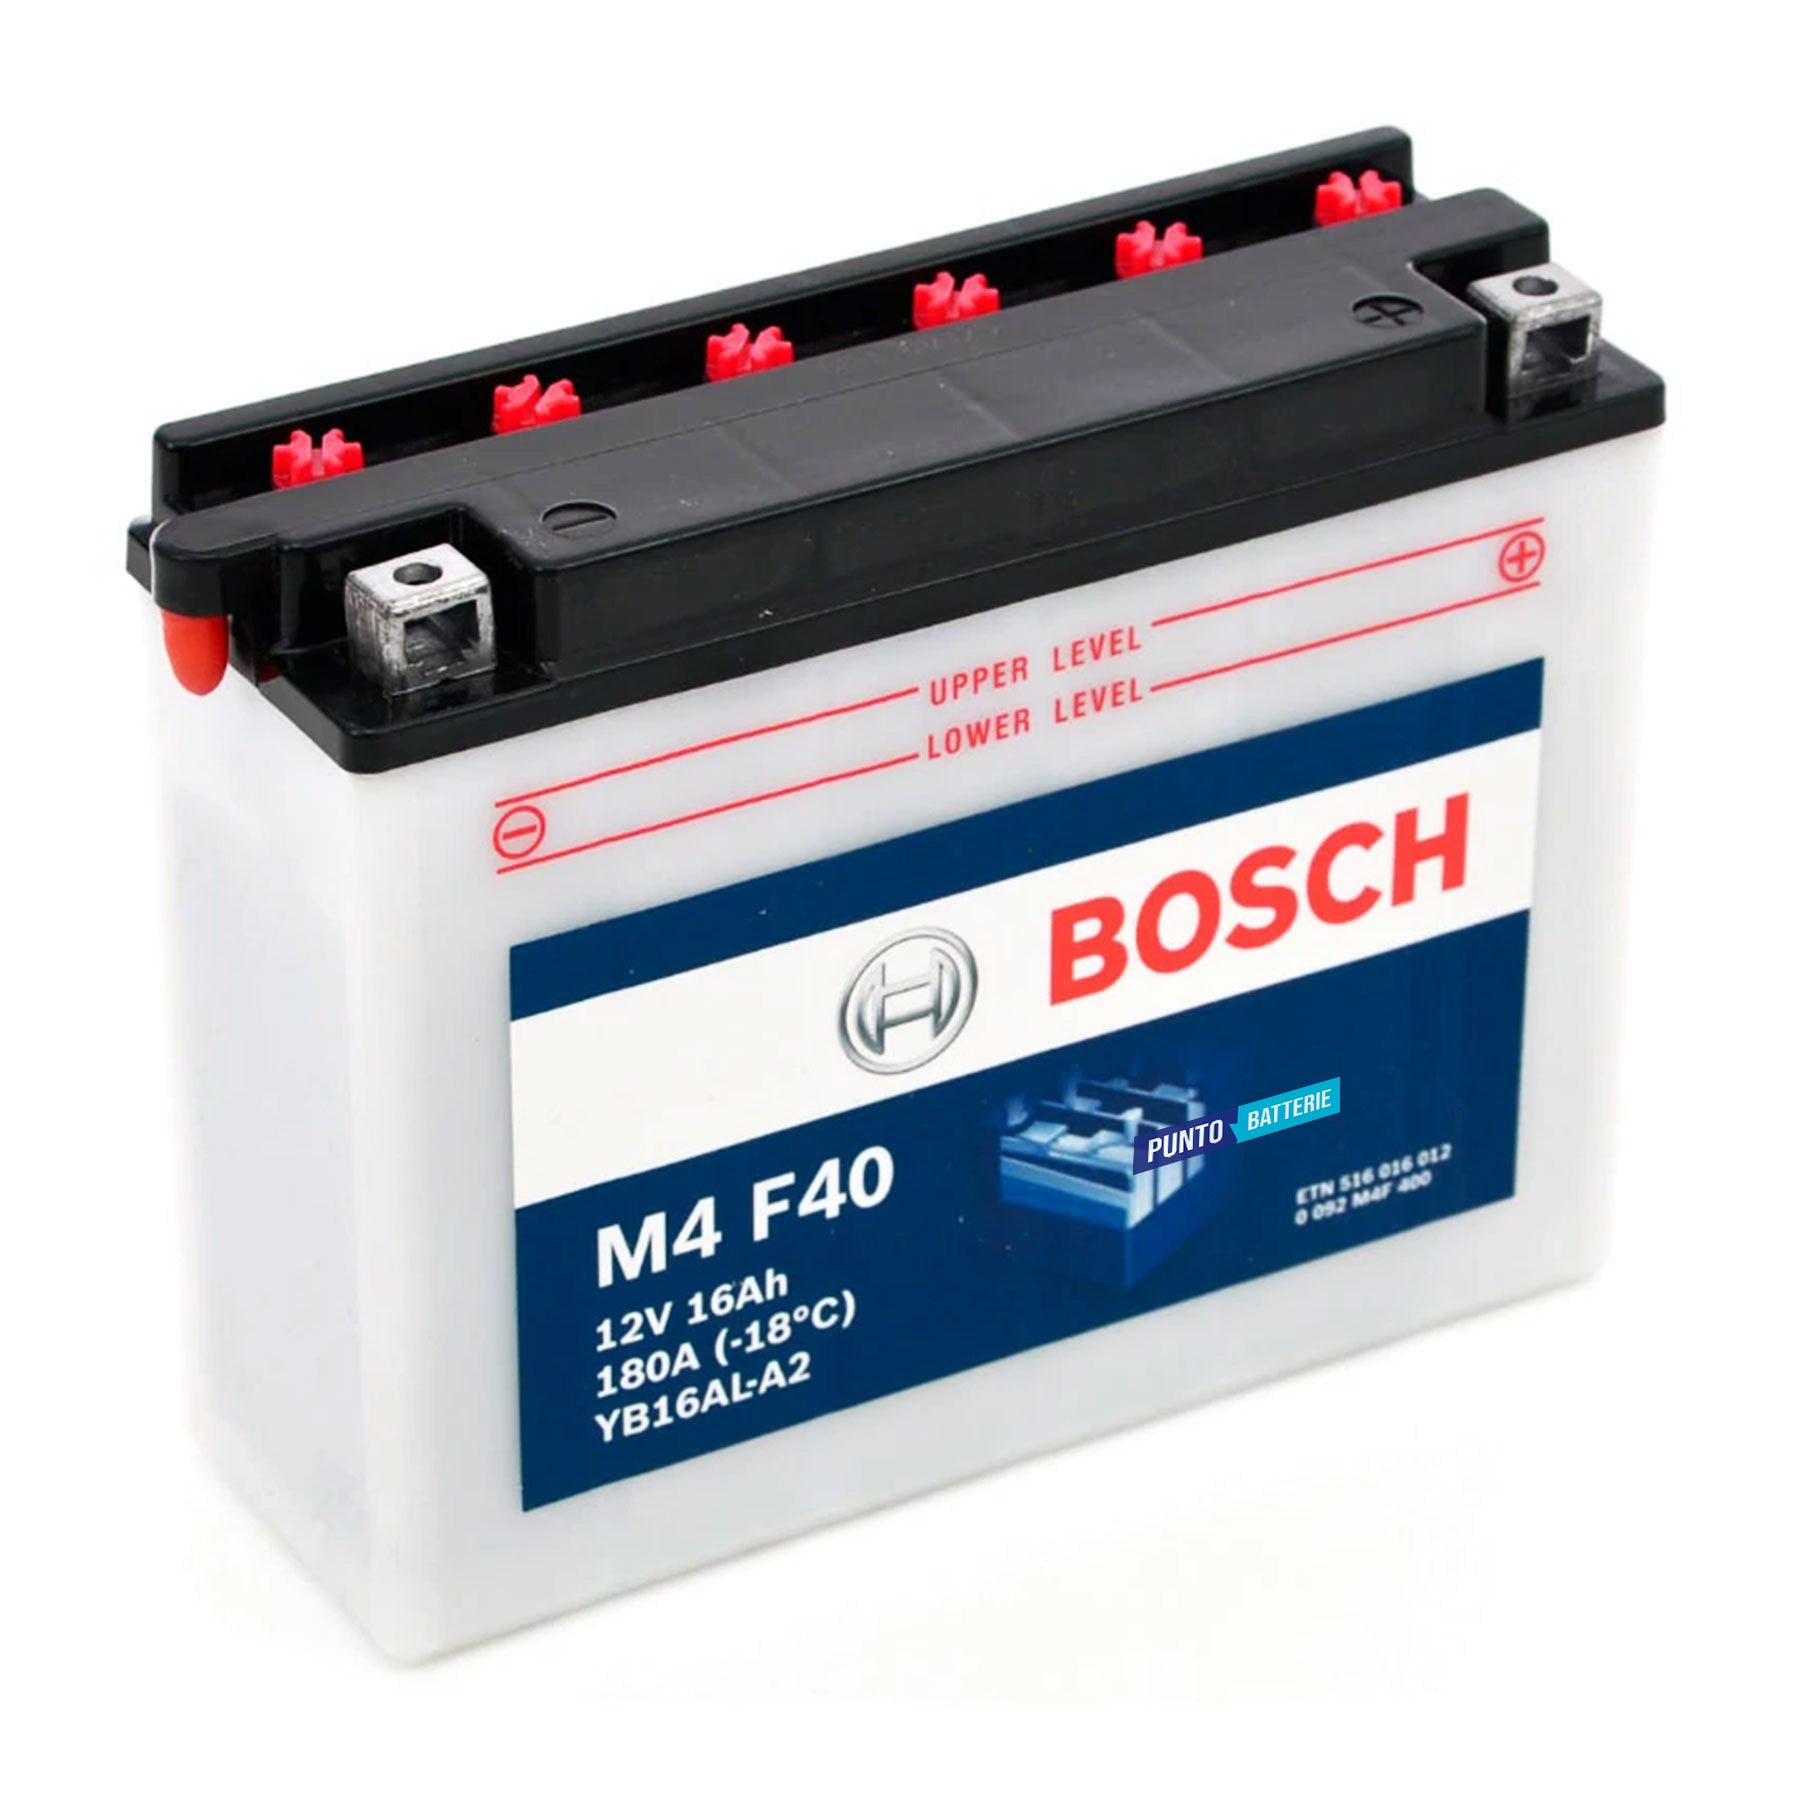 Batteria originale Bosch M4 M4F40, dimensioni 207 x 71.5 x 164, polo positivo a destra, 12 volt, 16 amperora, 180 ampere. Batteria per moto, scooter e powersport.